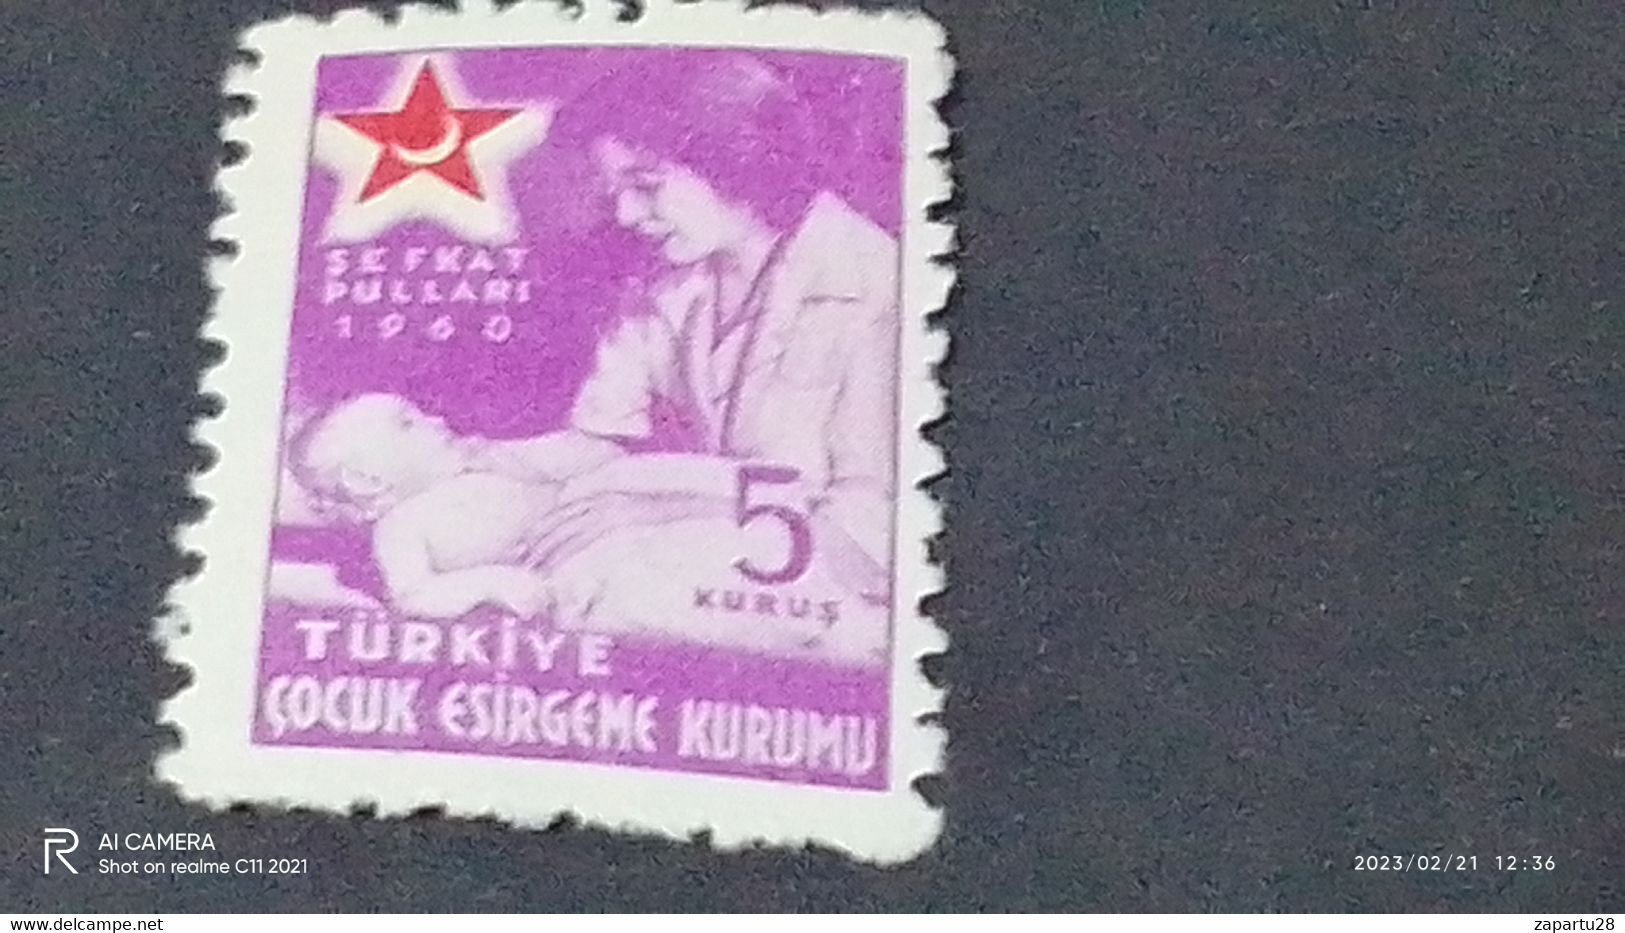 TÜRKEY--YARDIM PULLARI- 1950-60   ÇOCUK ESİRGEME 5K  DAMGASIZ - Charity Stamps